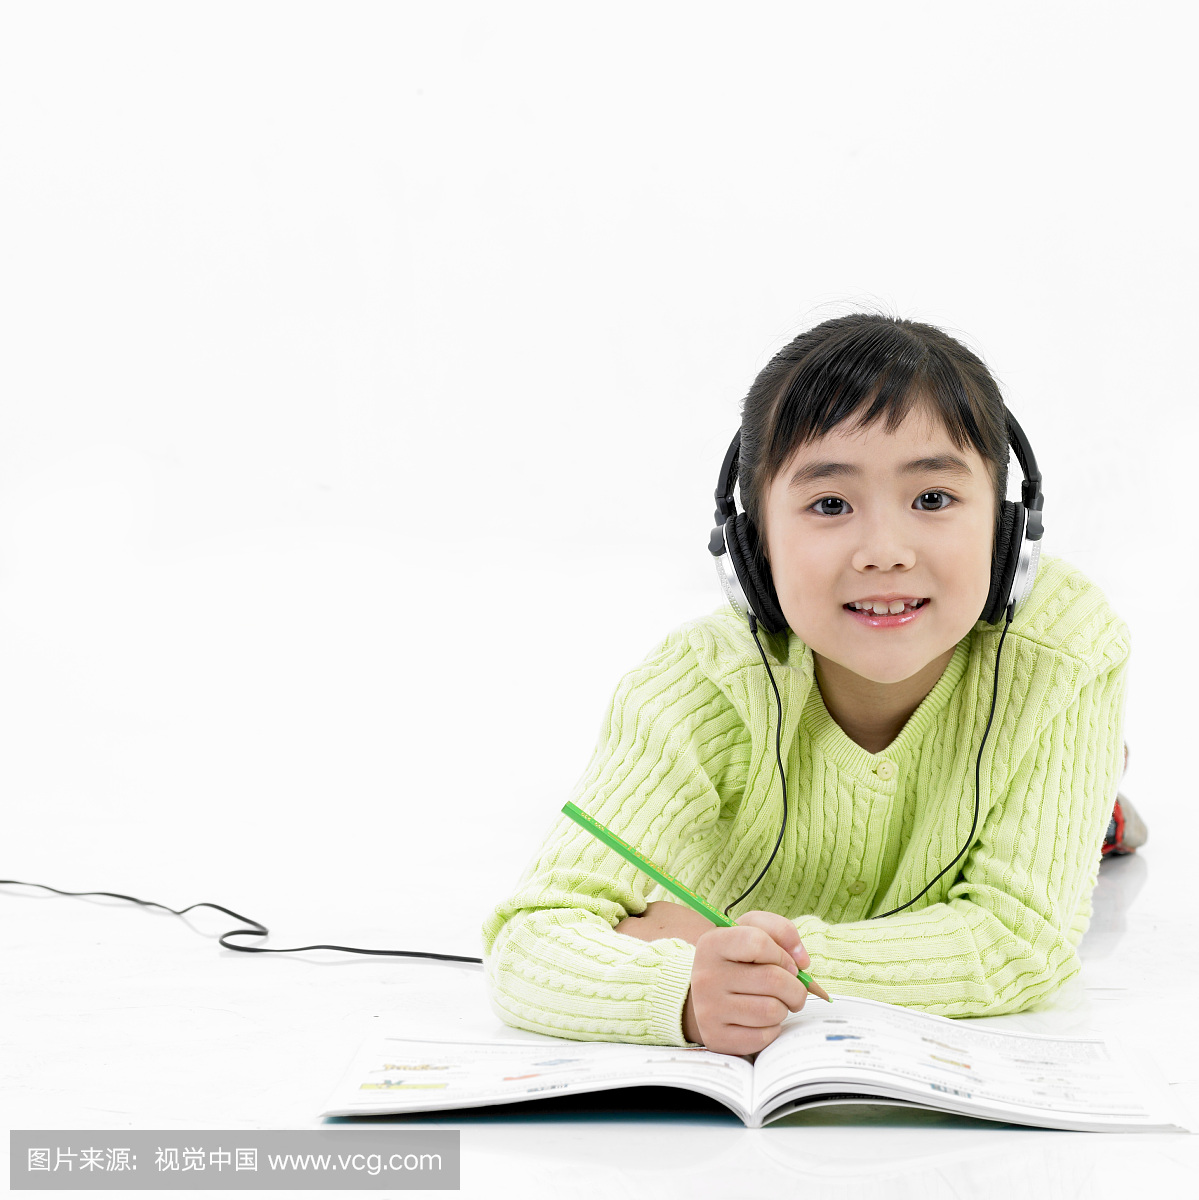 一个用耳机学习和听英语的女孩